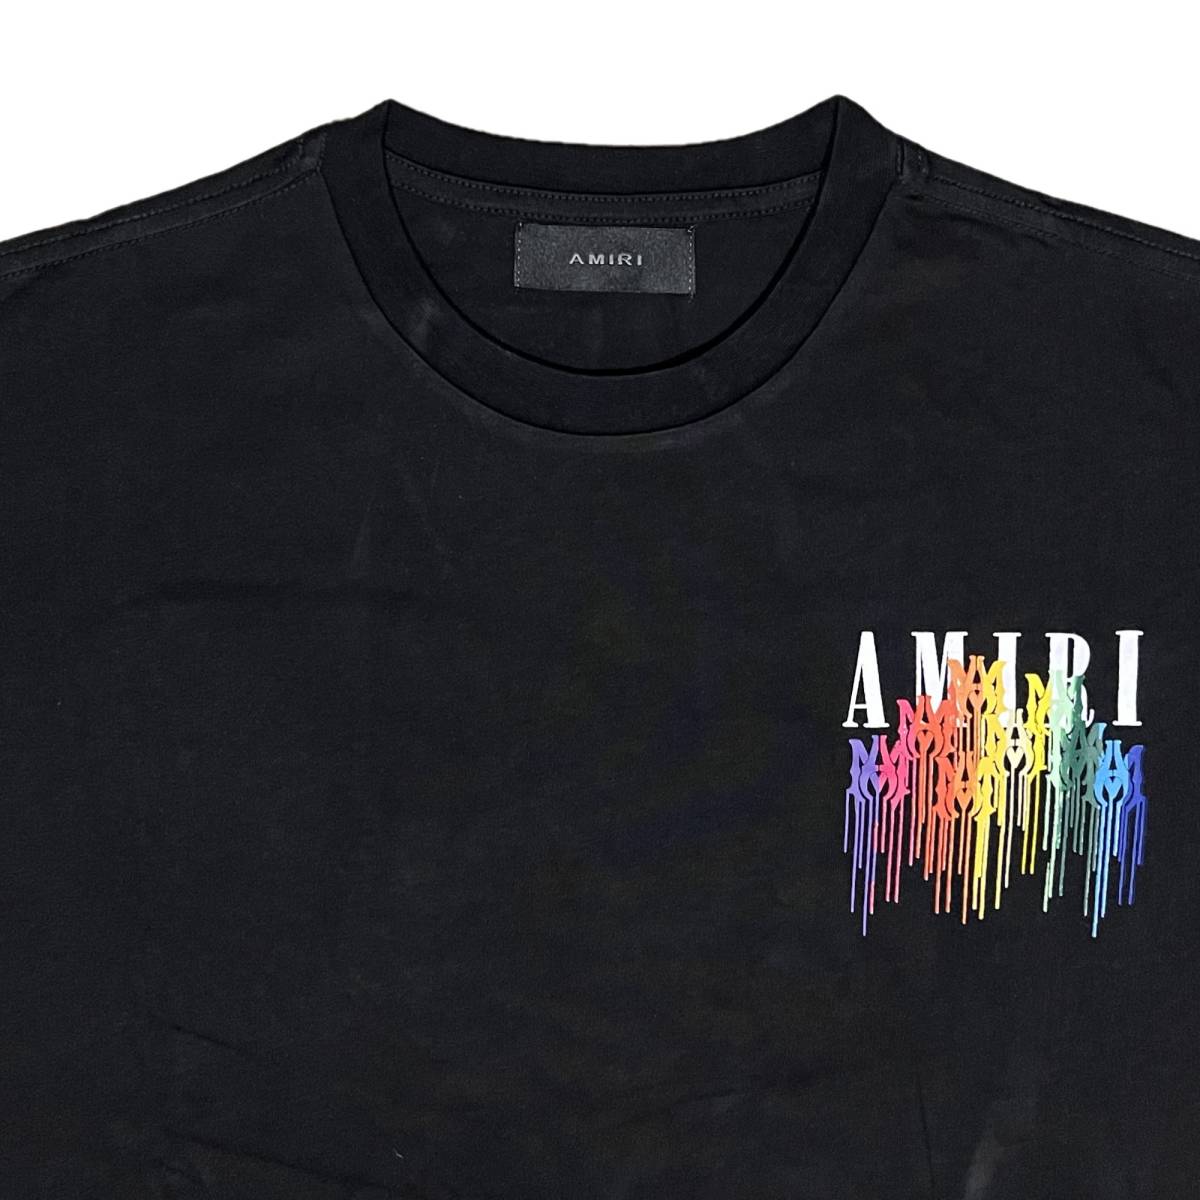 [並行輸入品] AMIRI アミリ DRIP COLLAGE ドリップ コラージュ Tシャツ (ブラック) (L)_画像3